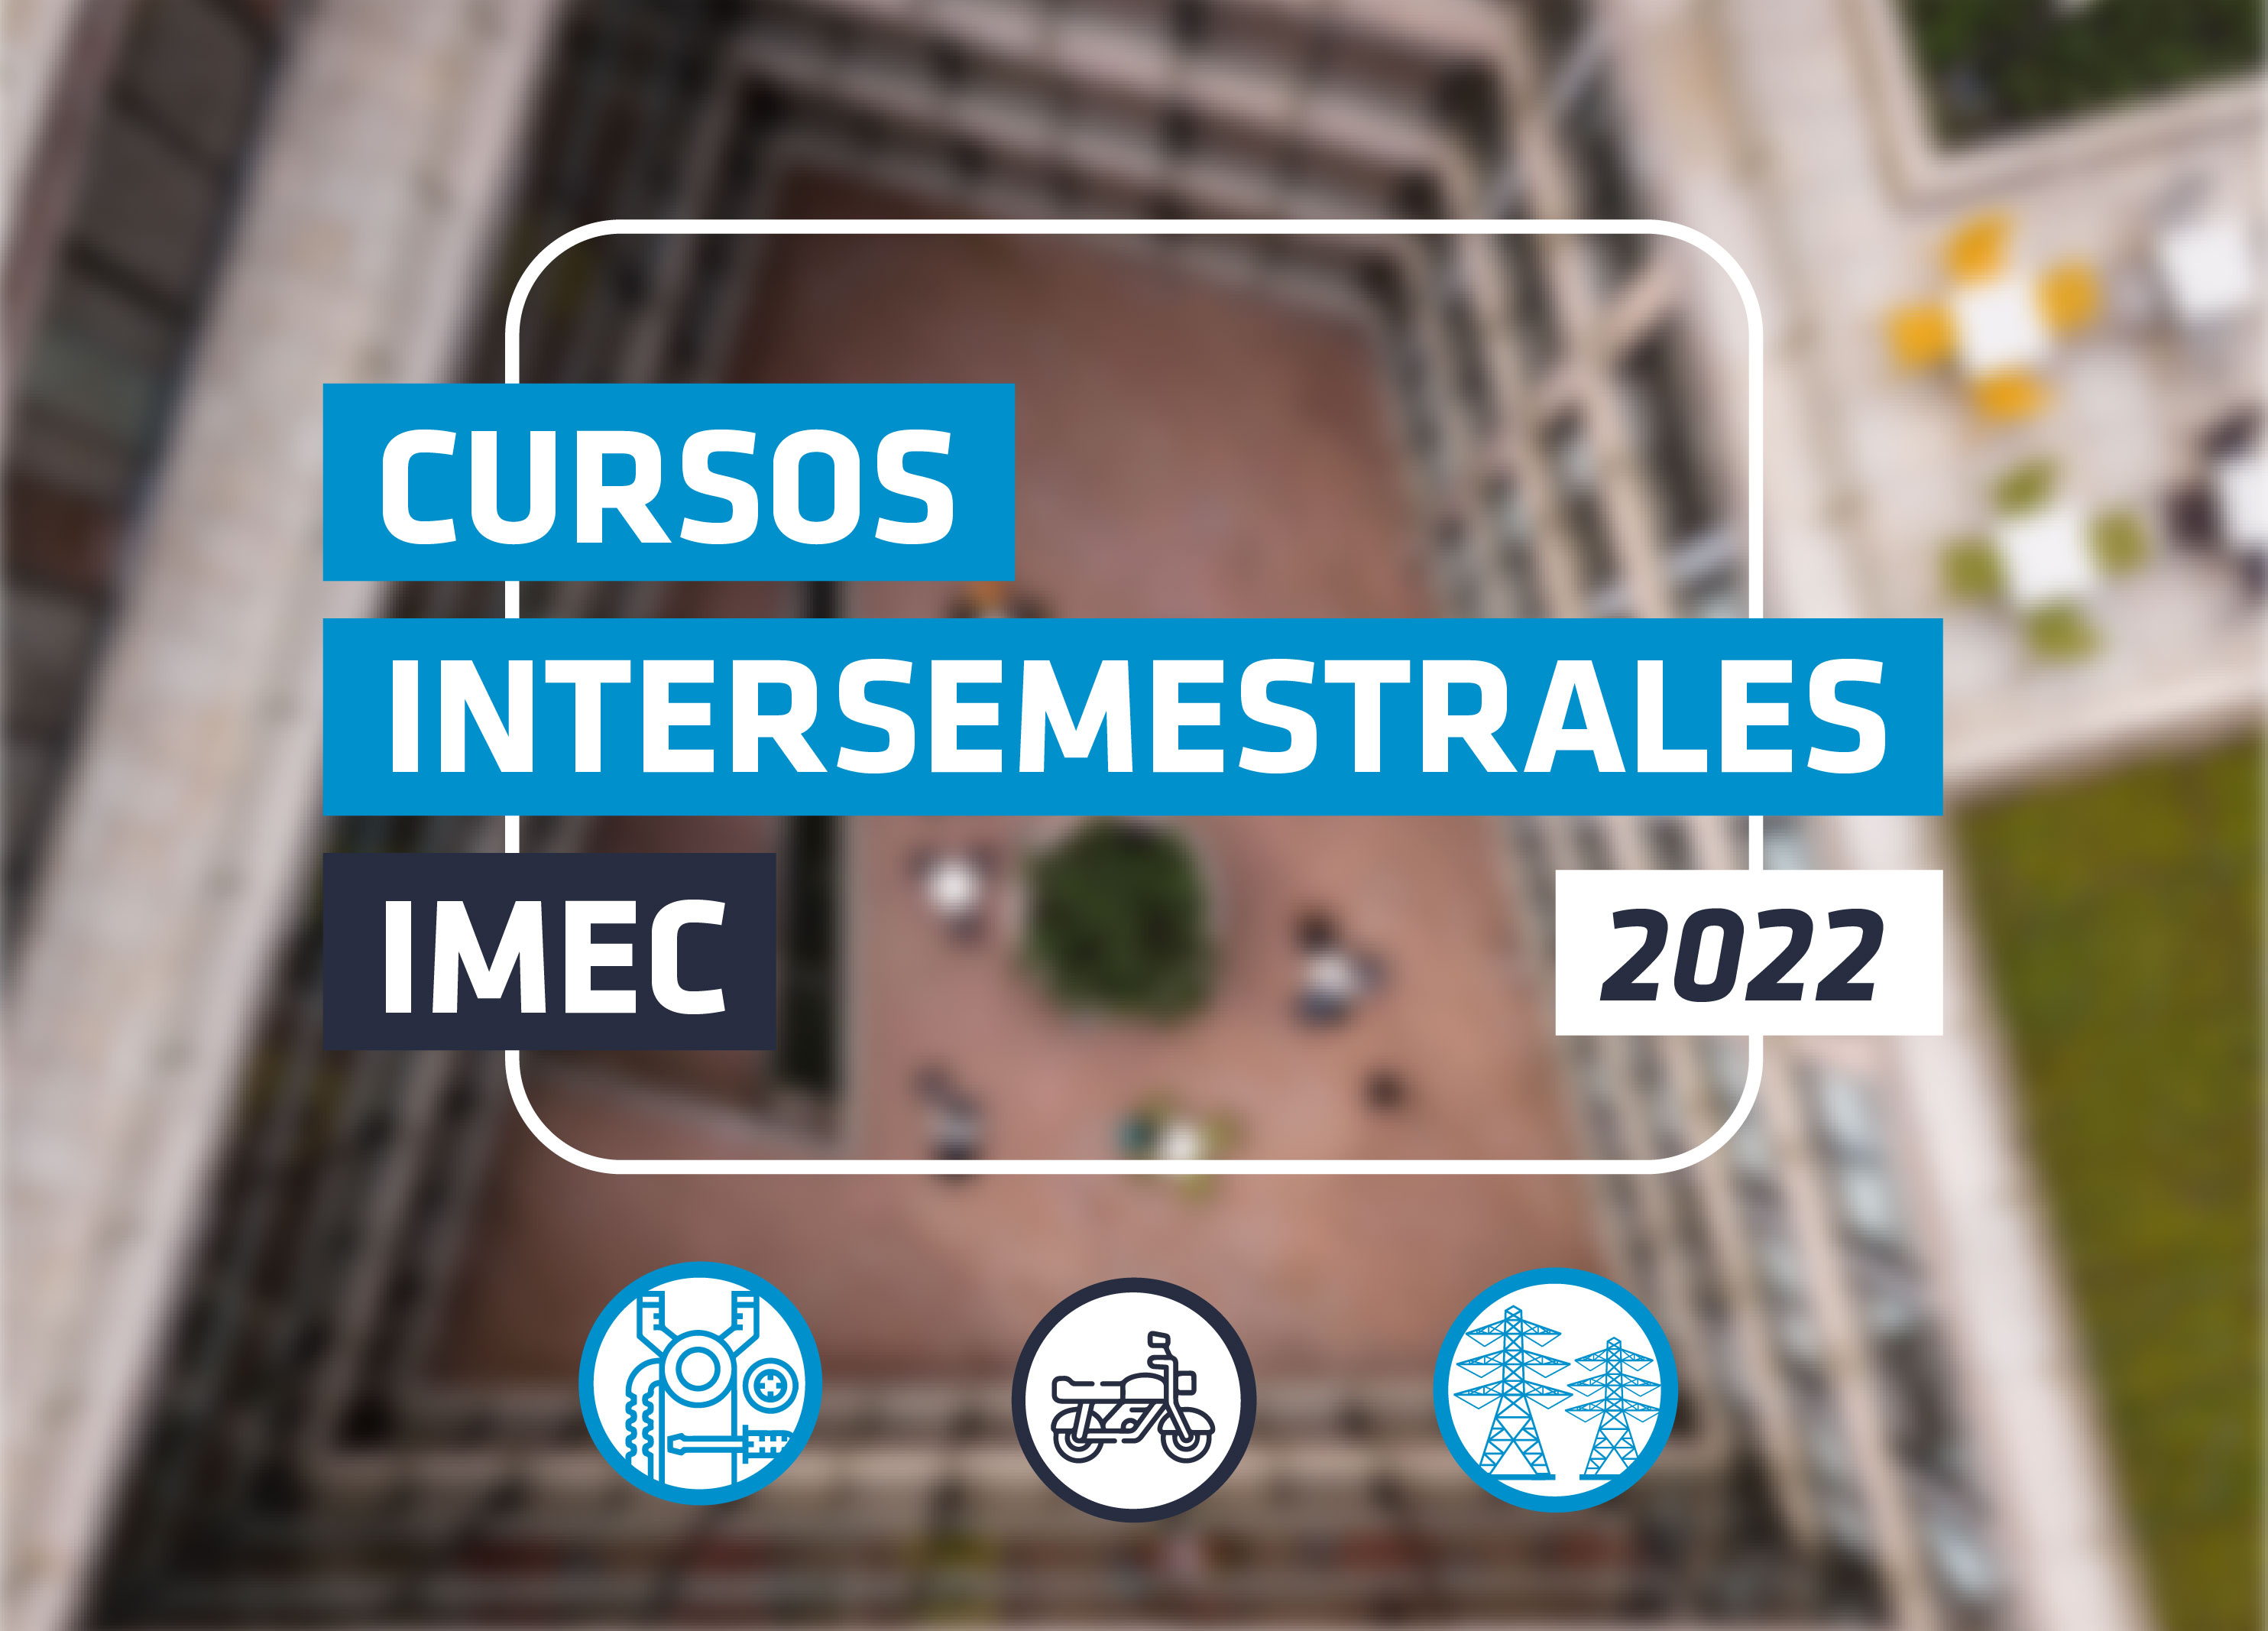 Oferta intersemestral de cursos IMEC 2022